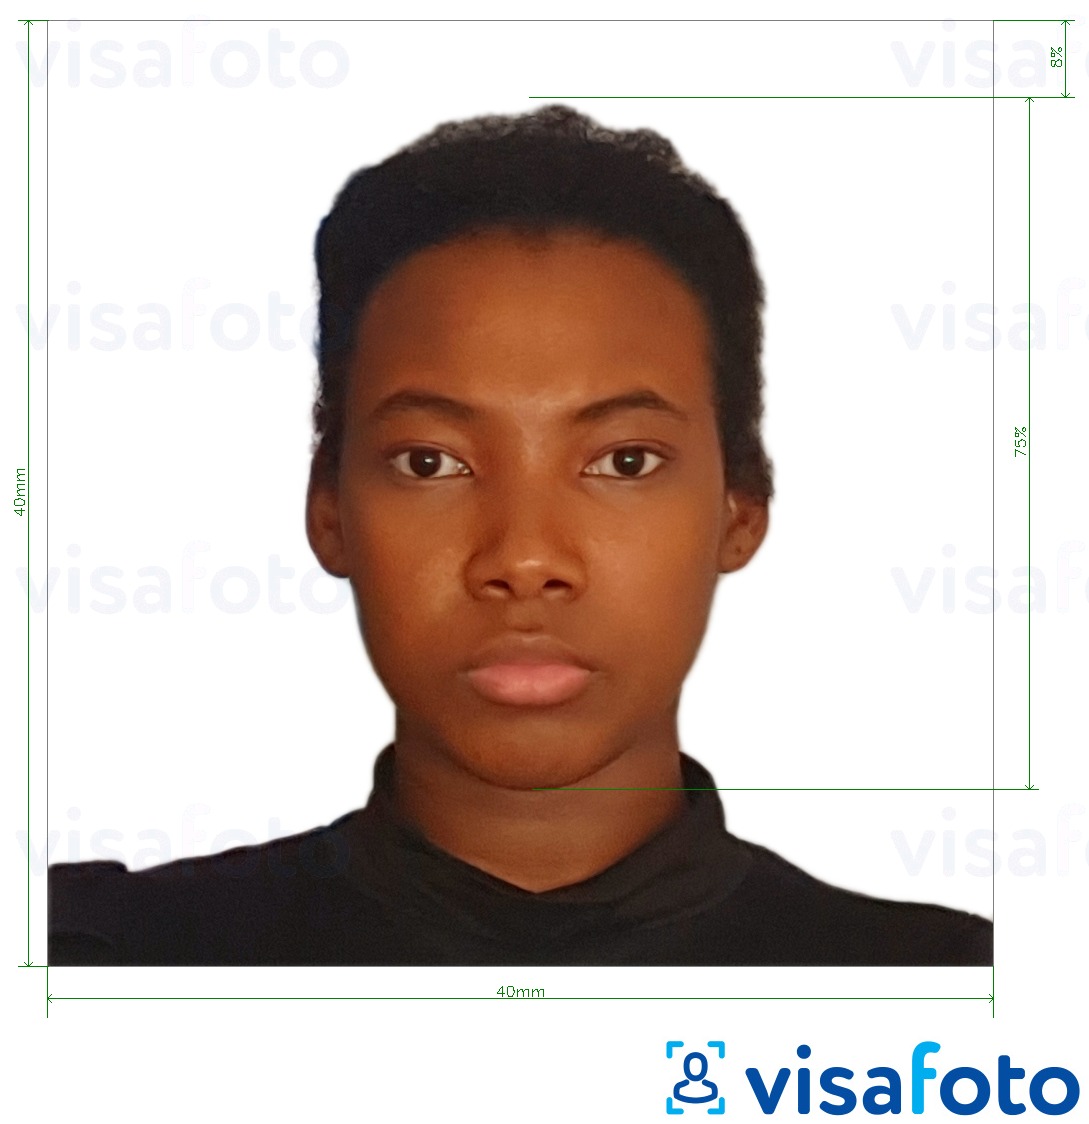 Primer fotografije za Kamerunska potna listina 4x4 cm (40x40 mm) z natančno specifikacijo velikosti